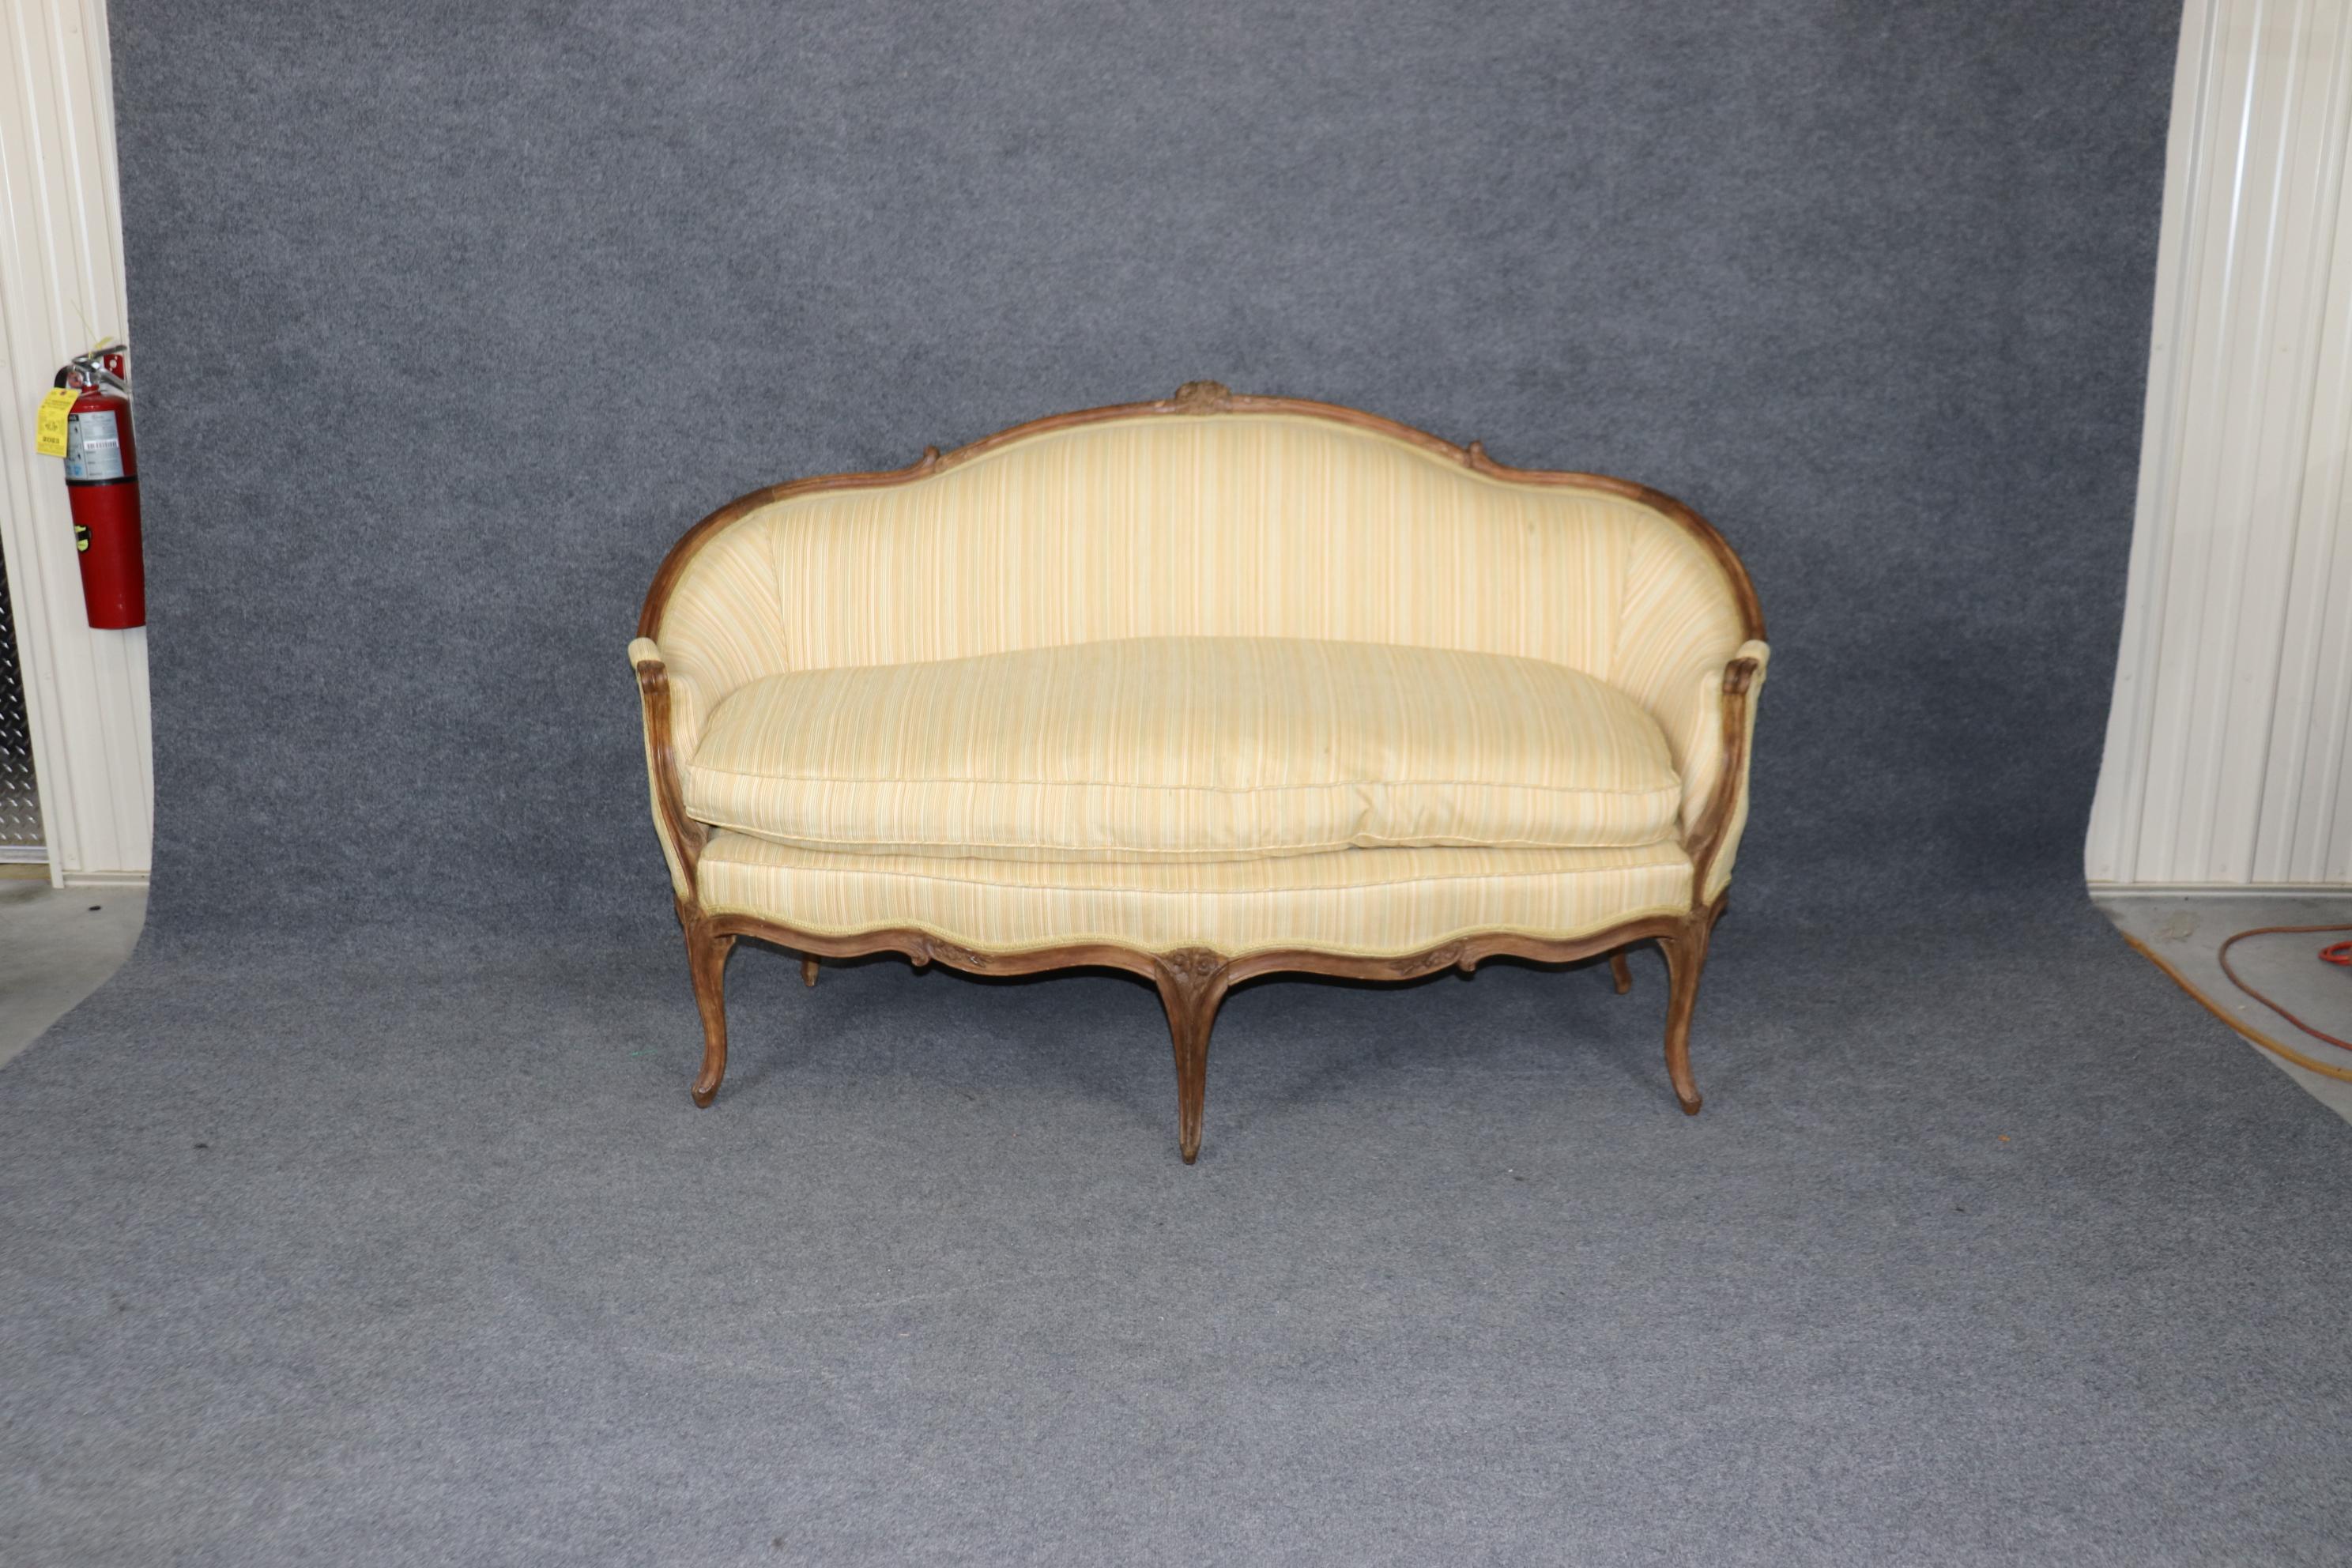 Dies ist ein wunderschönes handgeschnitztes französisches Sofa von 1780. Das Sofa zeigt seine ursprüngliche Oberfläche mit den ursprünglichen Alters- und Gebrauchsspuren und kleinen antiken Reparaturen. Die Polsterung ist noch recht gut, weist aber